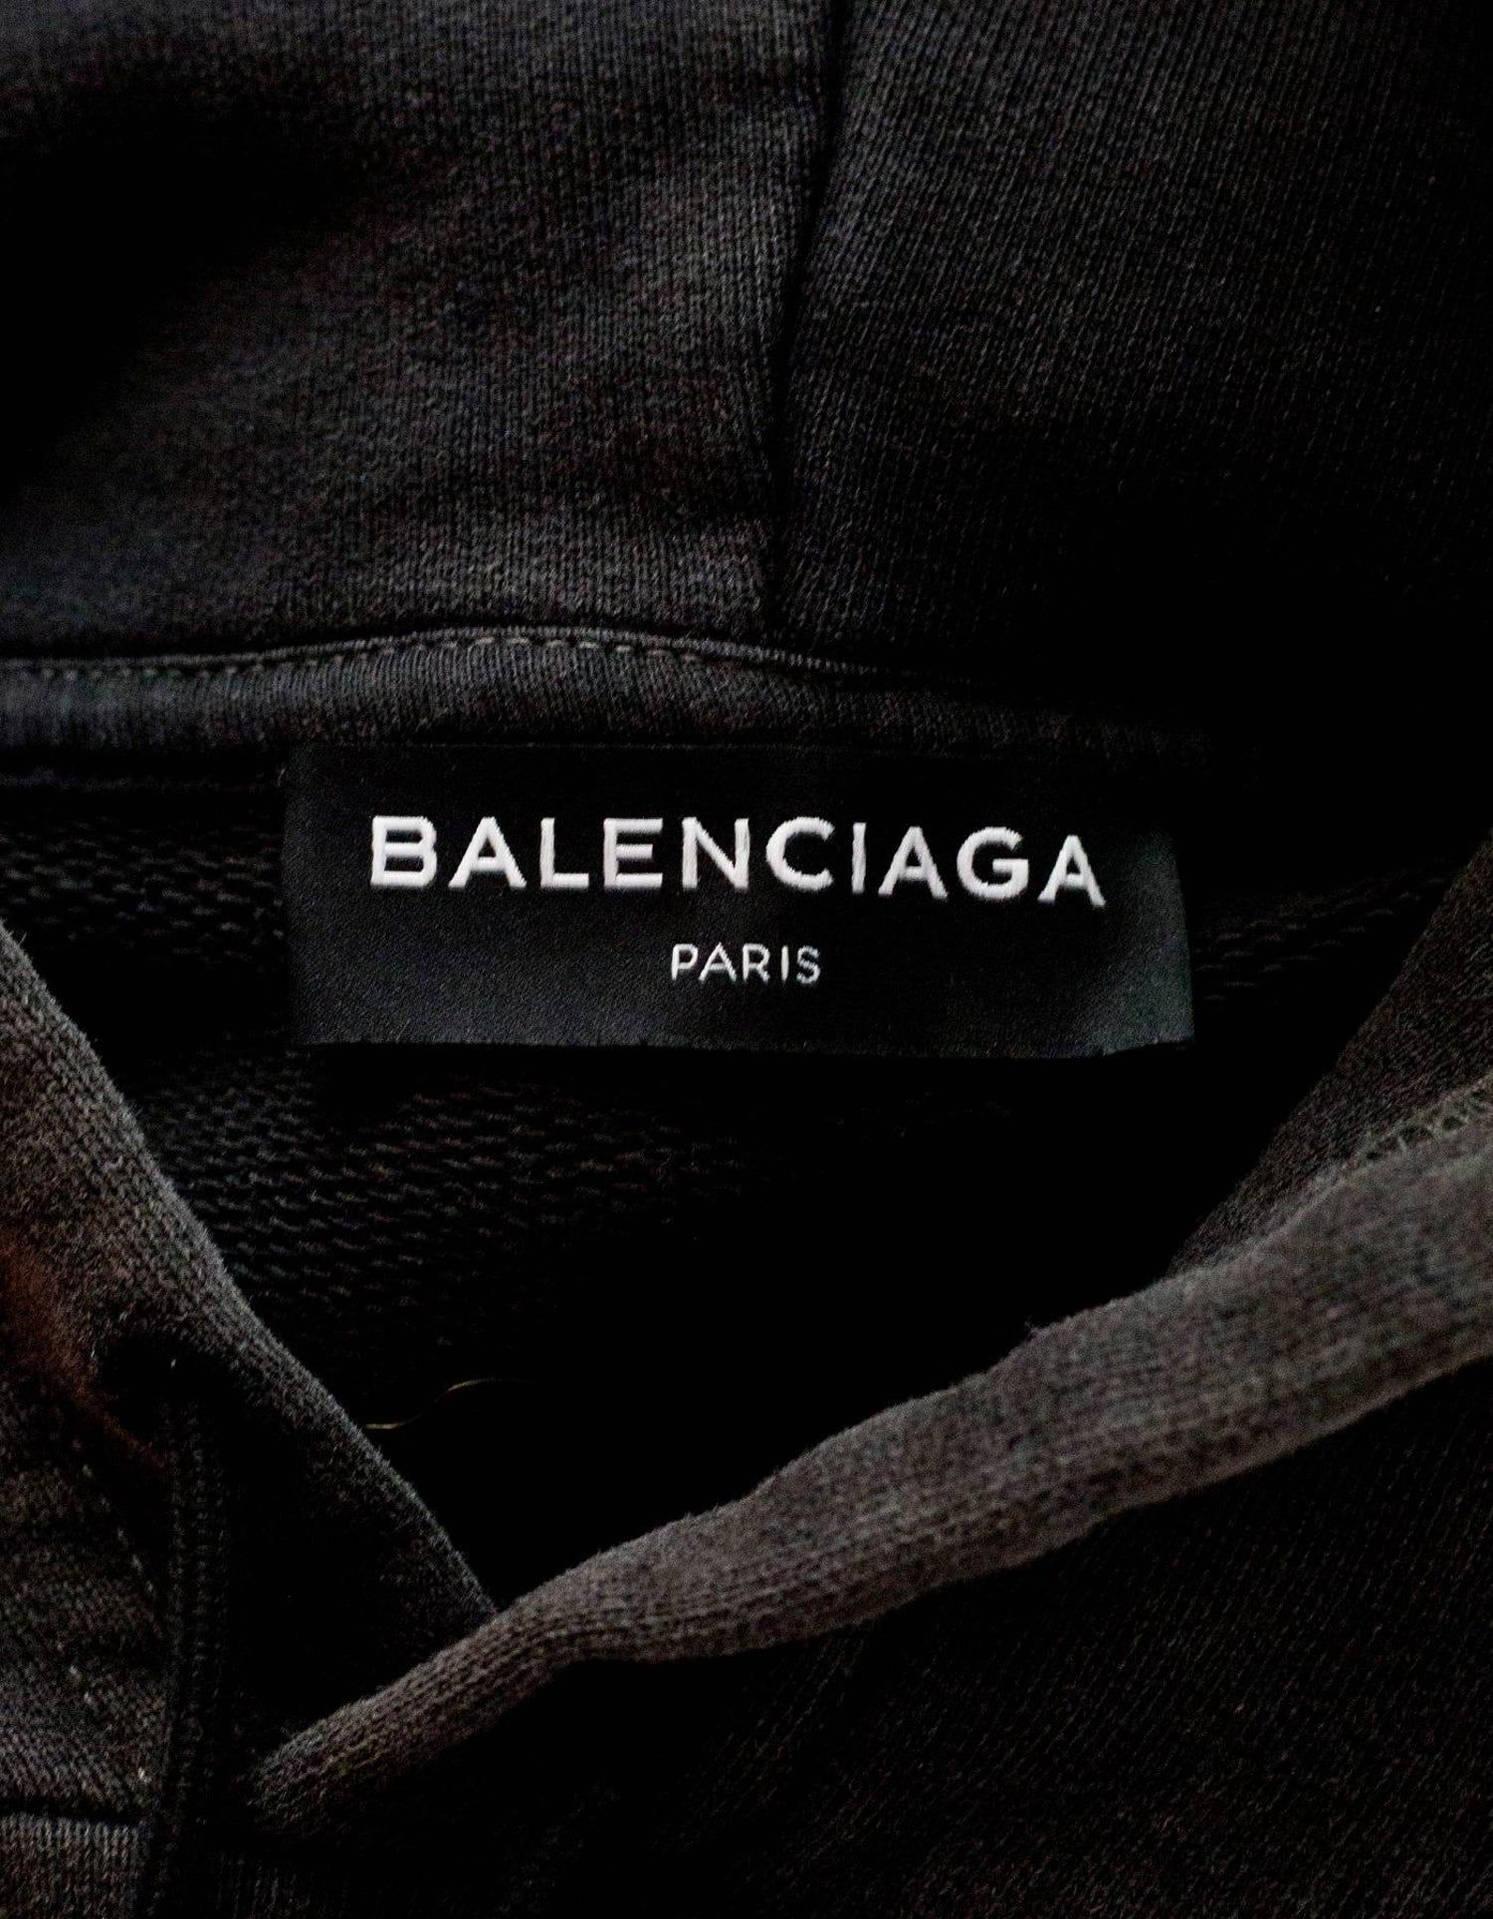 Download Balenciaga Clothing Tag Wallpaper